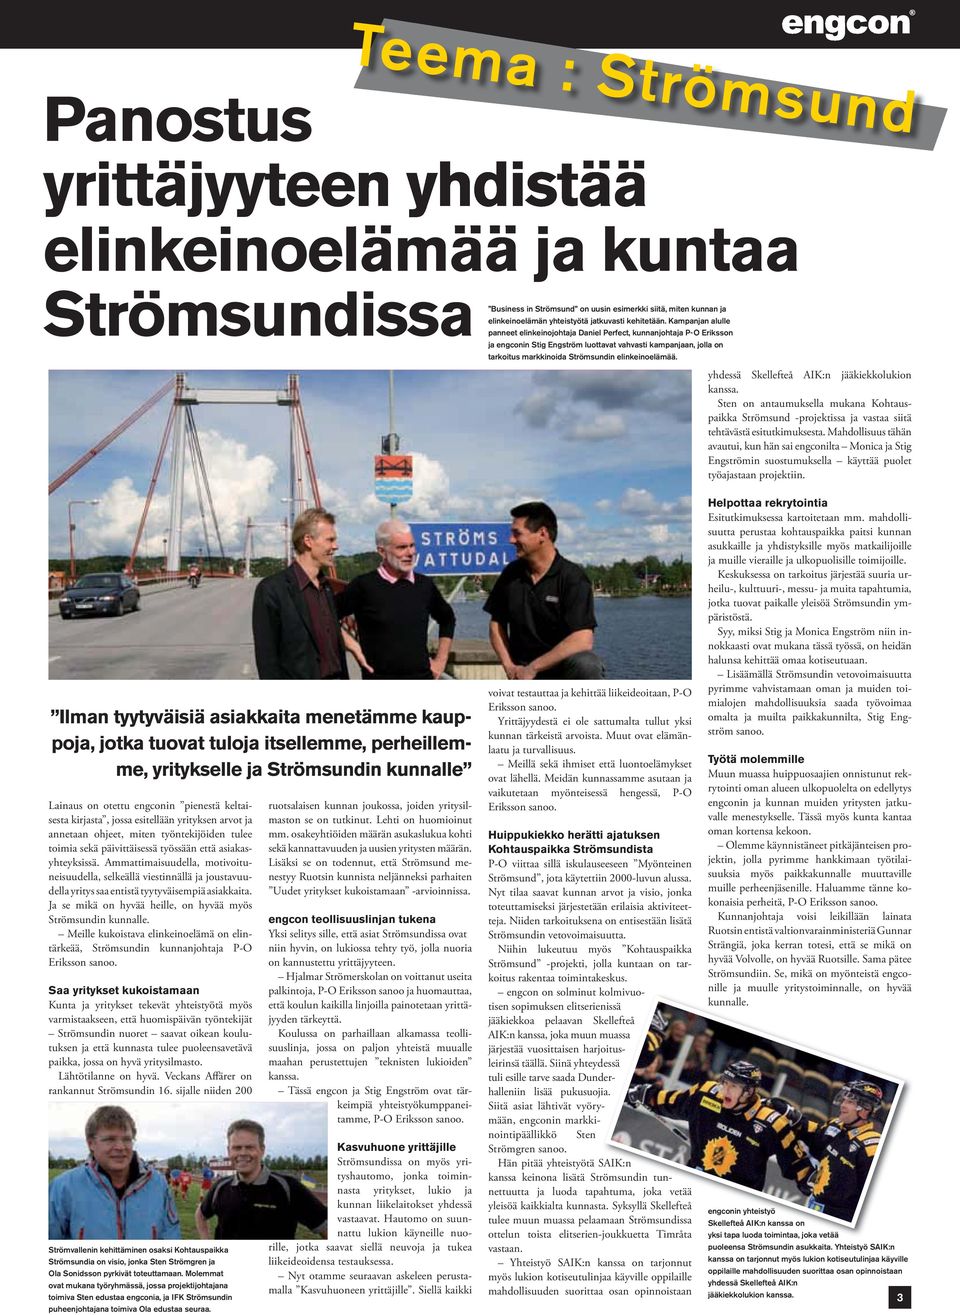 Kampanjan alulle panneet elinkeinojohtaja Daniel Perfect, kunnanjohtaja P-O Eriksson ja engconin Stig Engström luottavat vahvasti kampanjaan, jolla on tarkoitus markkinoida Strömsundin